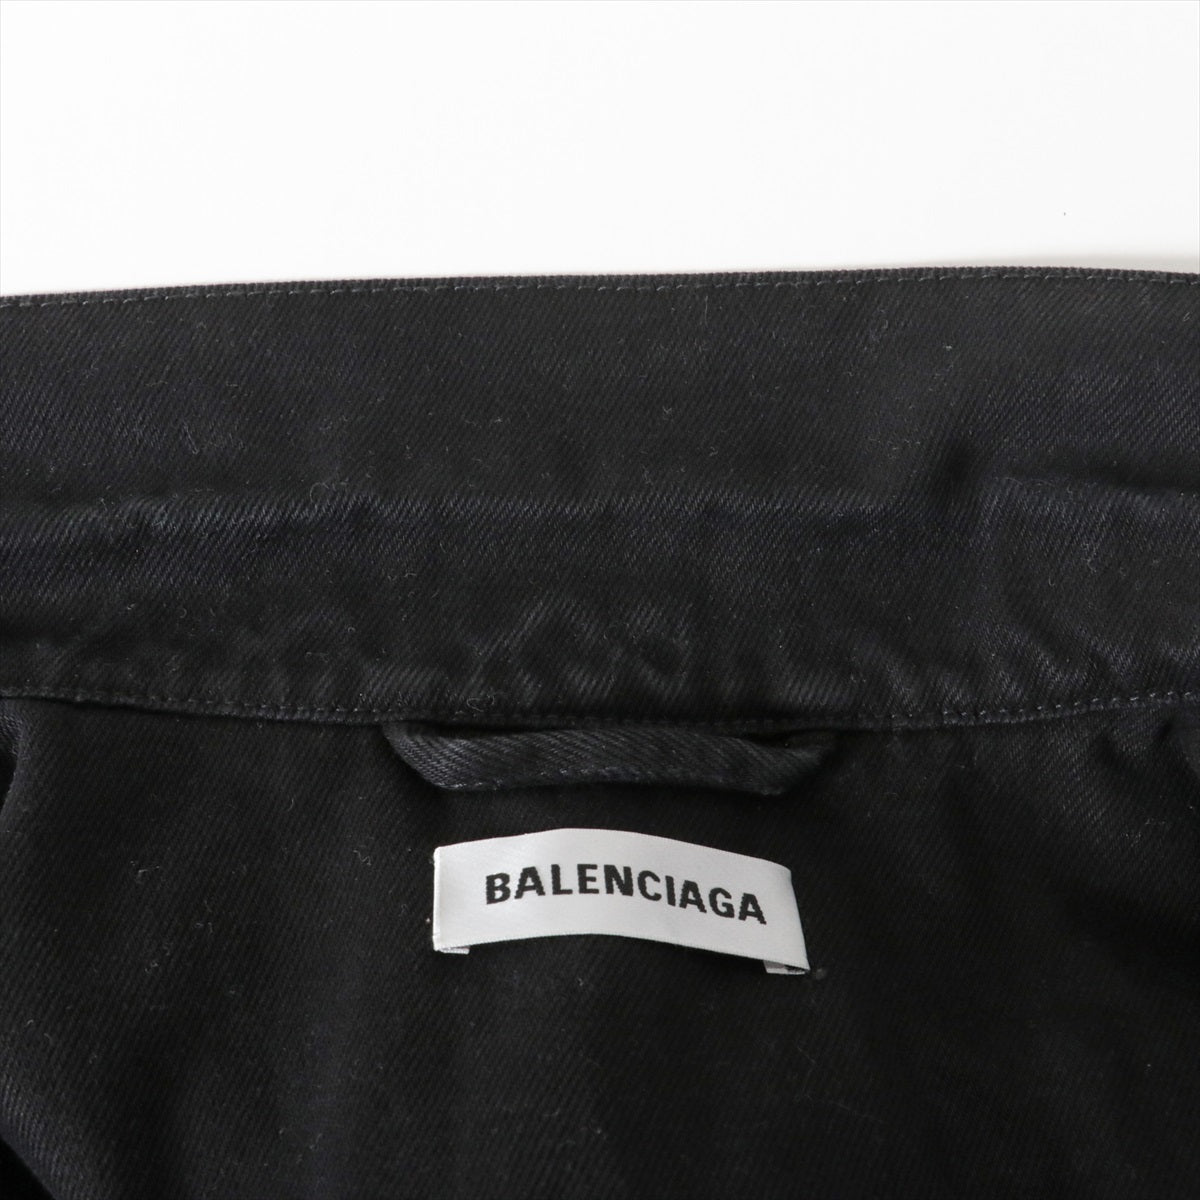 バレンシアガ 19SS コットン×ポリエステル デニムジャケット 36 レディース ブラック 557388 バックロゴ 刺繍